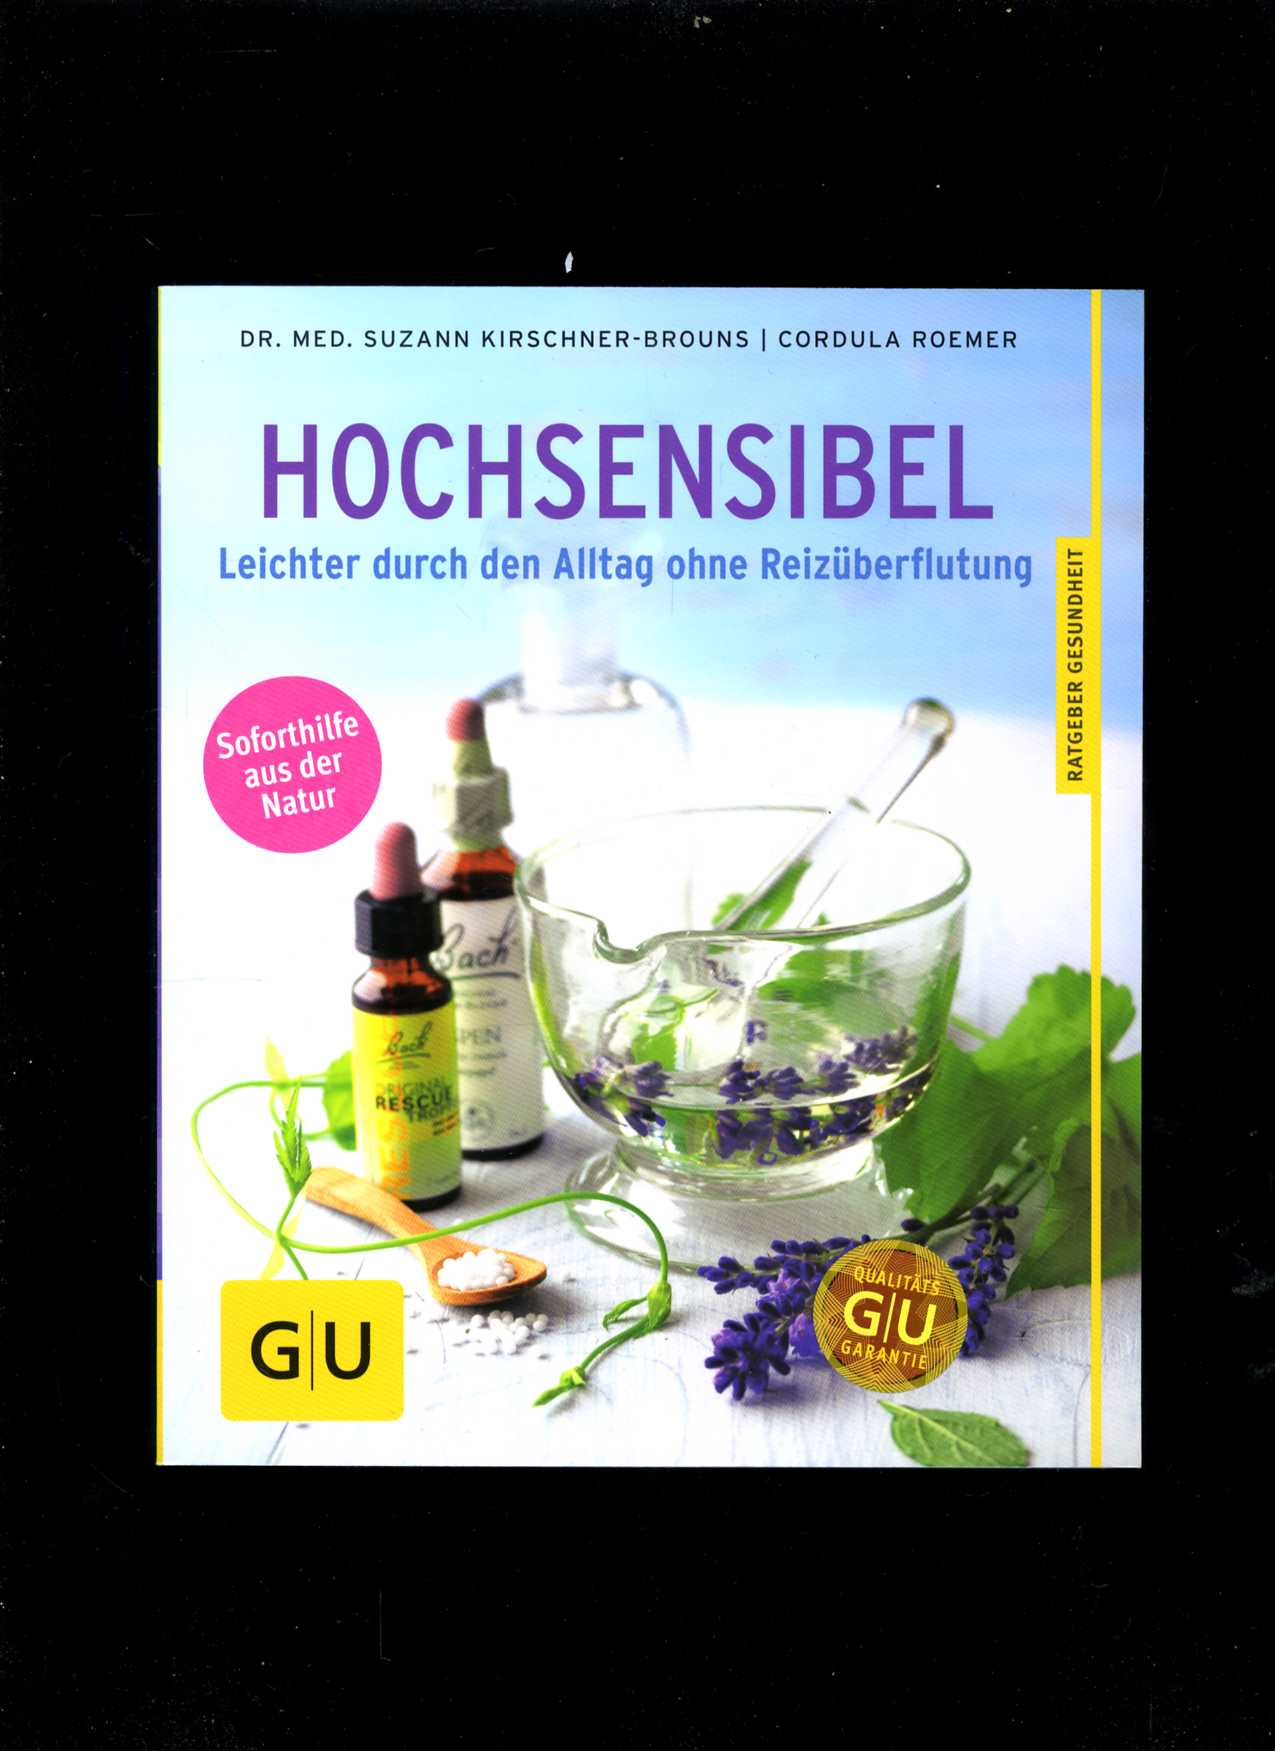 Hochsensibel (Suzann Kirschner-Brouns)